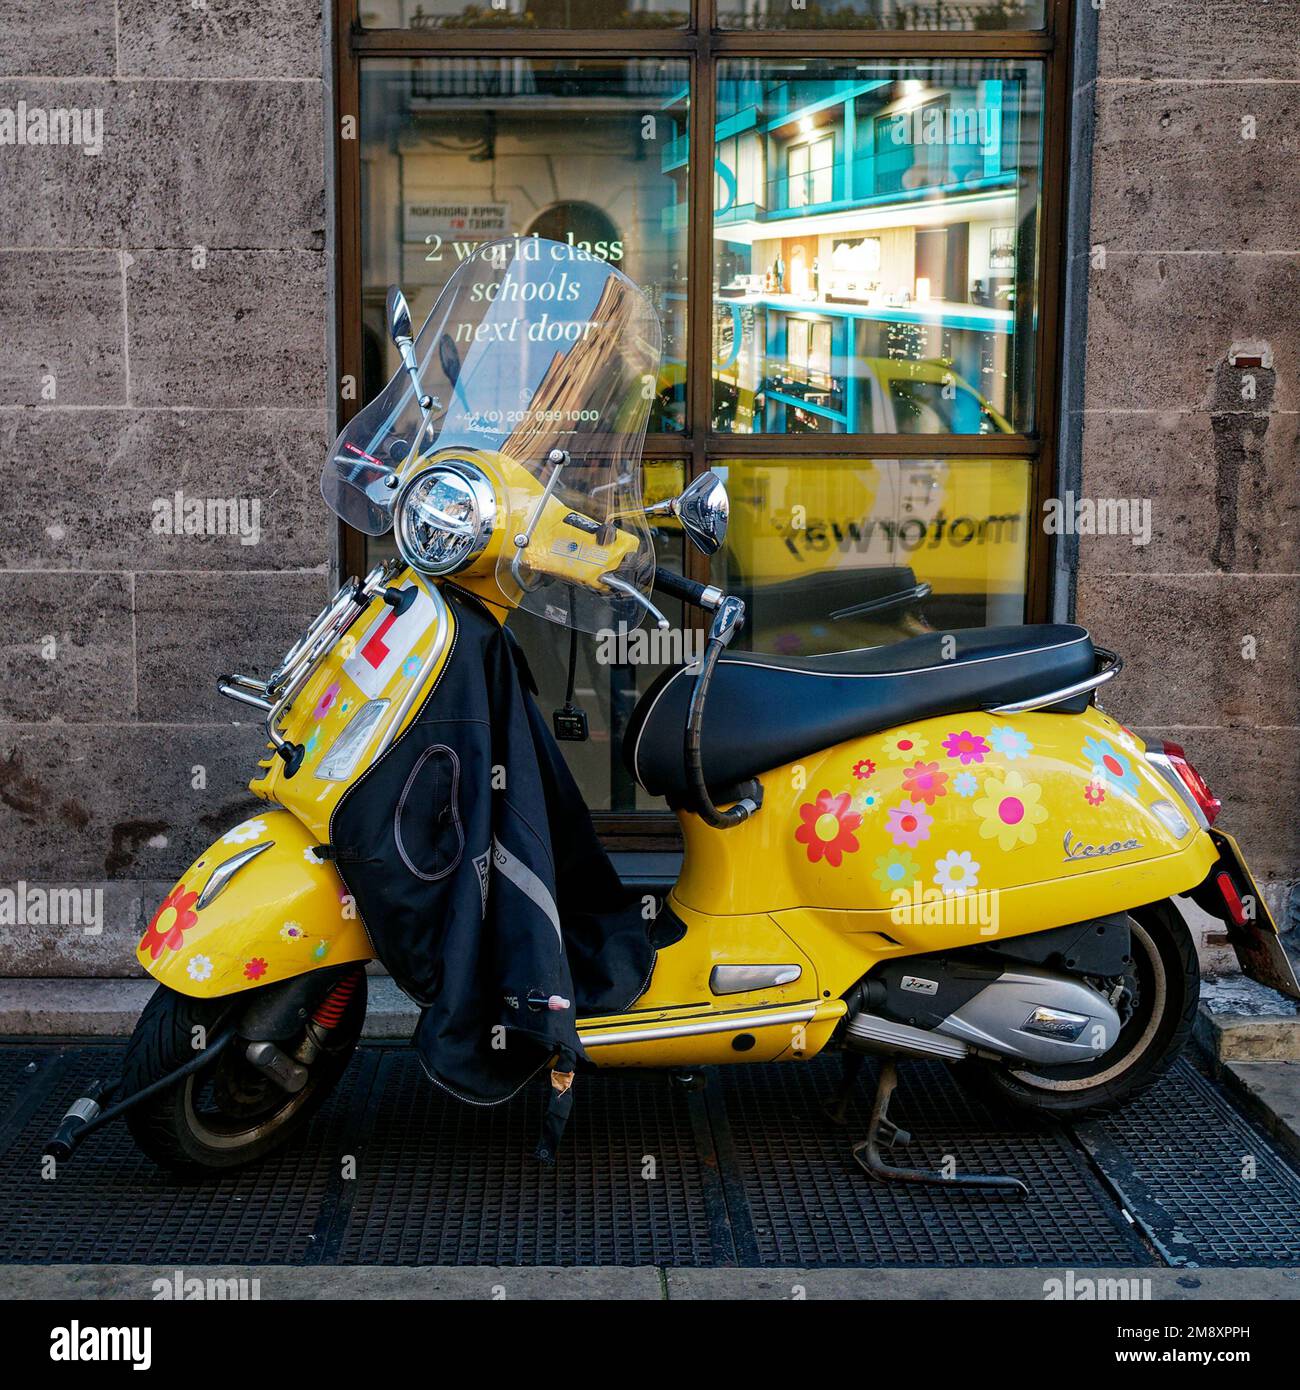 Scooter giallo Vespa aka con design floreale e piastre per studenti davanti a una finestra che riflette una cabina gialla aka taxi. Londra, Inghilterra Foto Stock